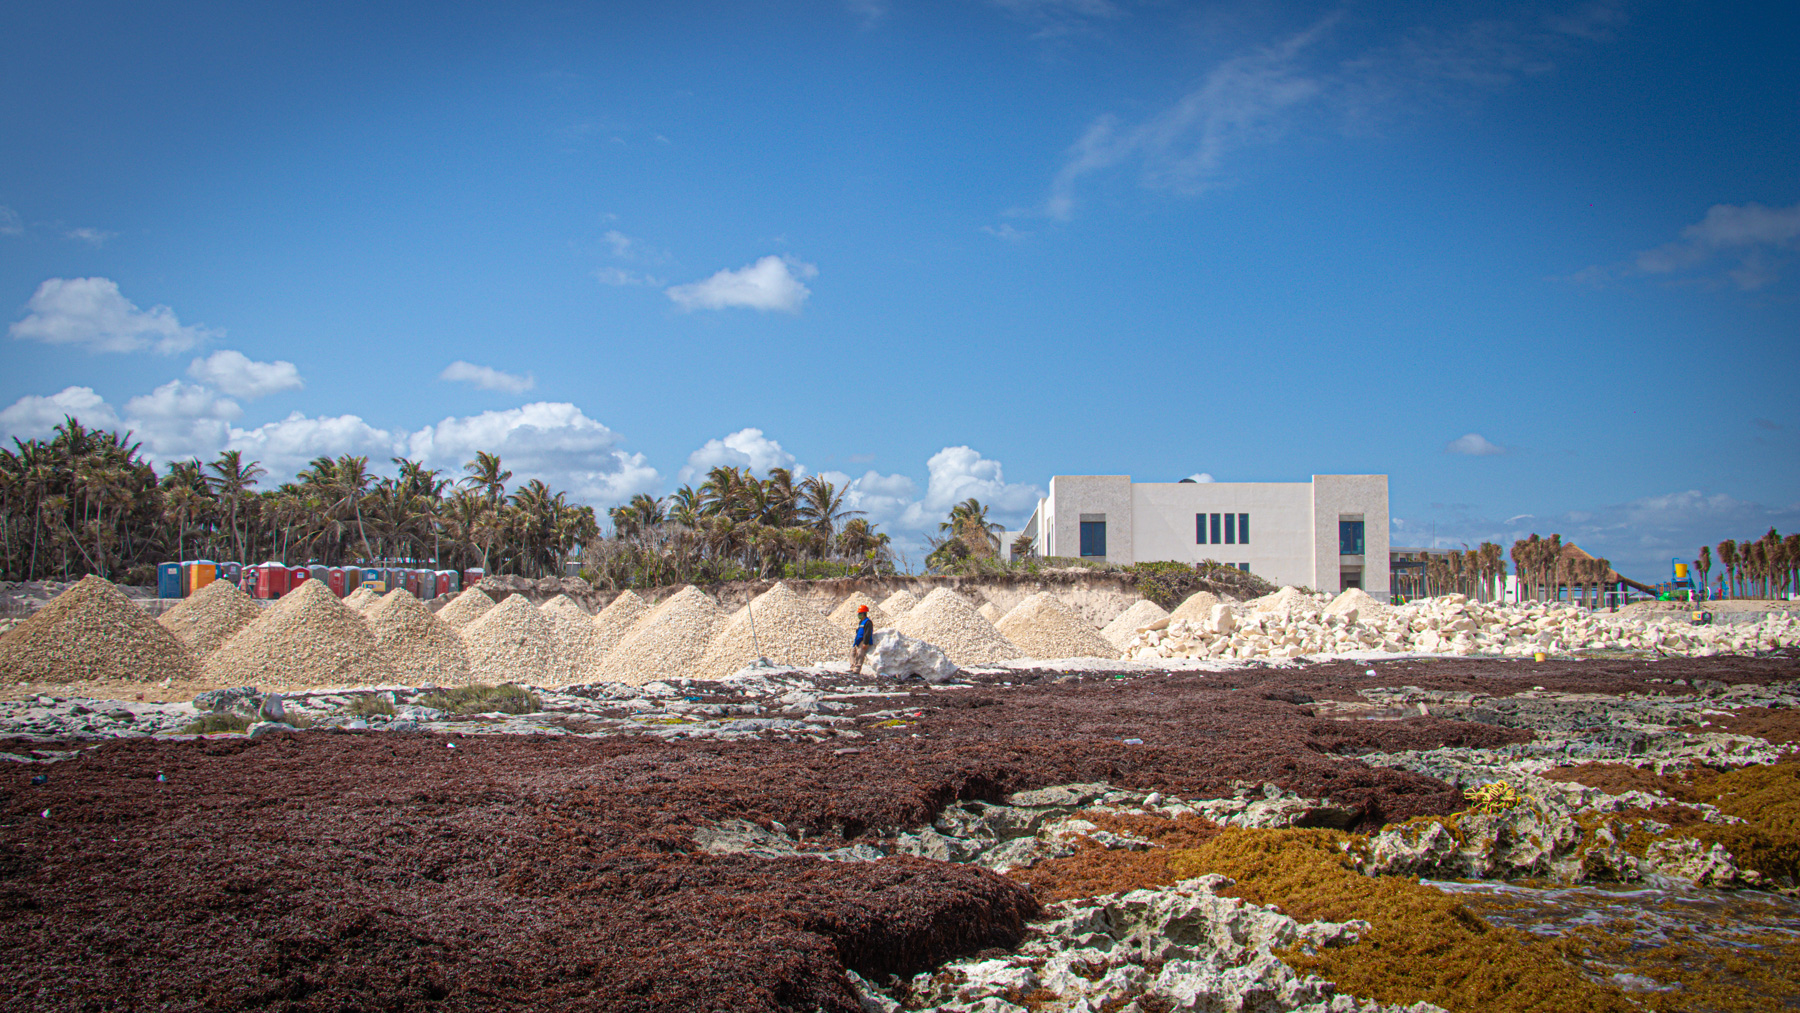 Montículos de piedra triturada en la Bahía Chemuyil, cuyo funcionamiento es
                        para rellenar suelos irregulares para el desarrollo turístico.